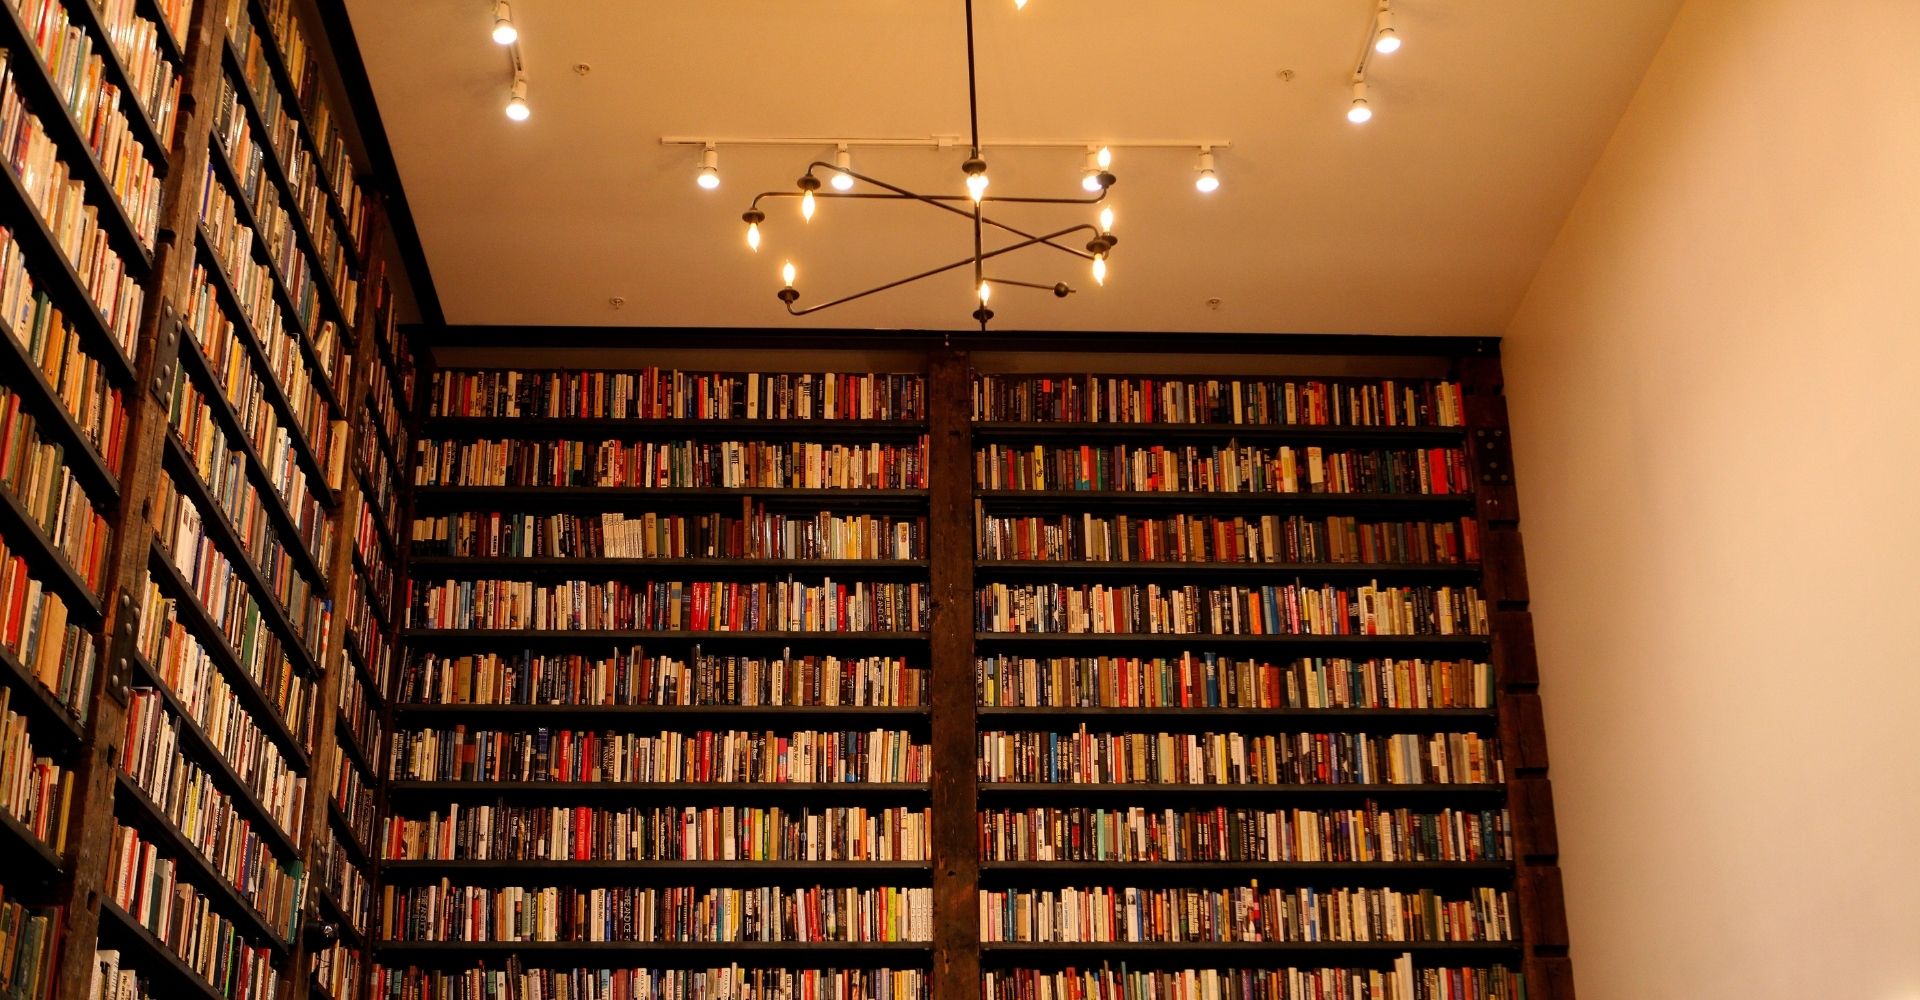 Vista di una libreria a muro con gli scaffali pieni di libri